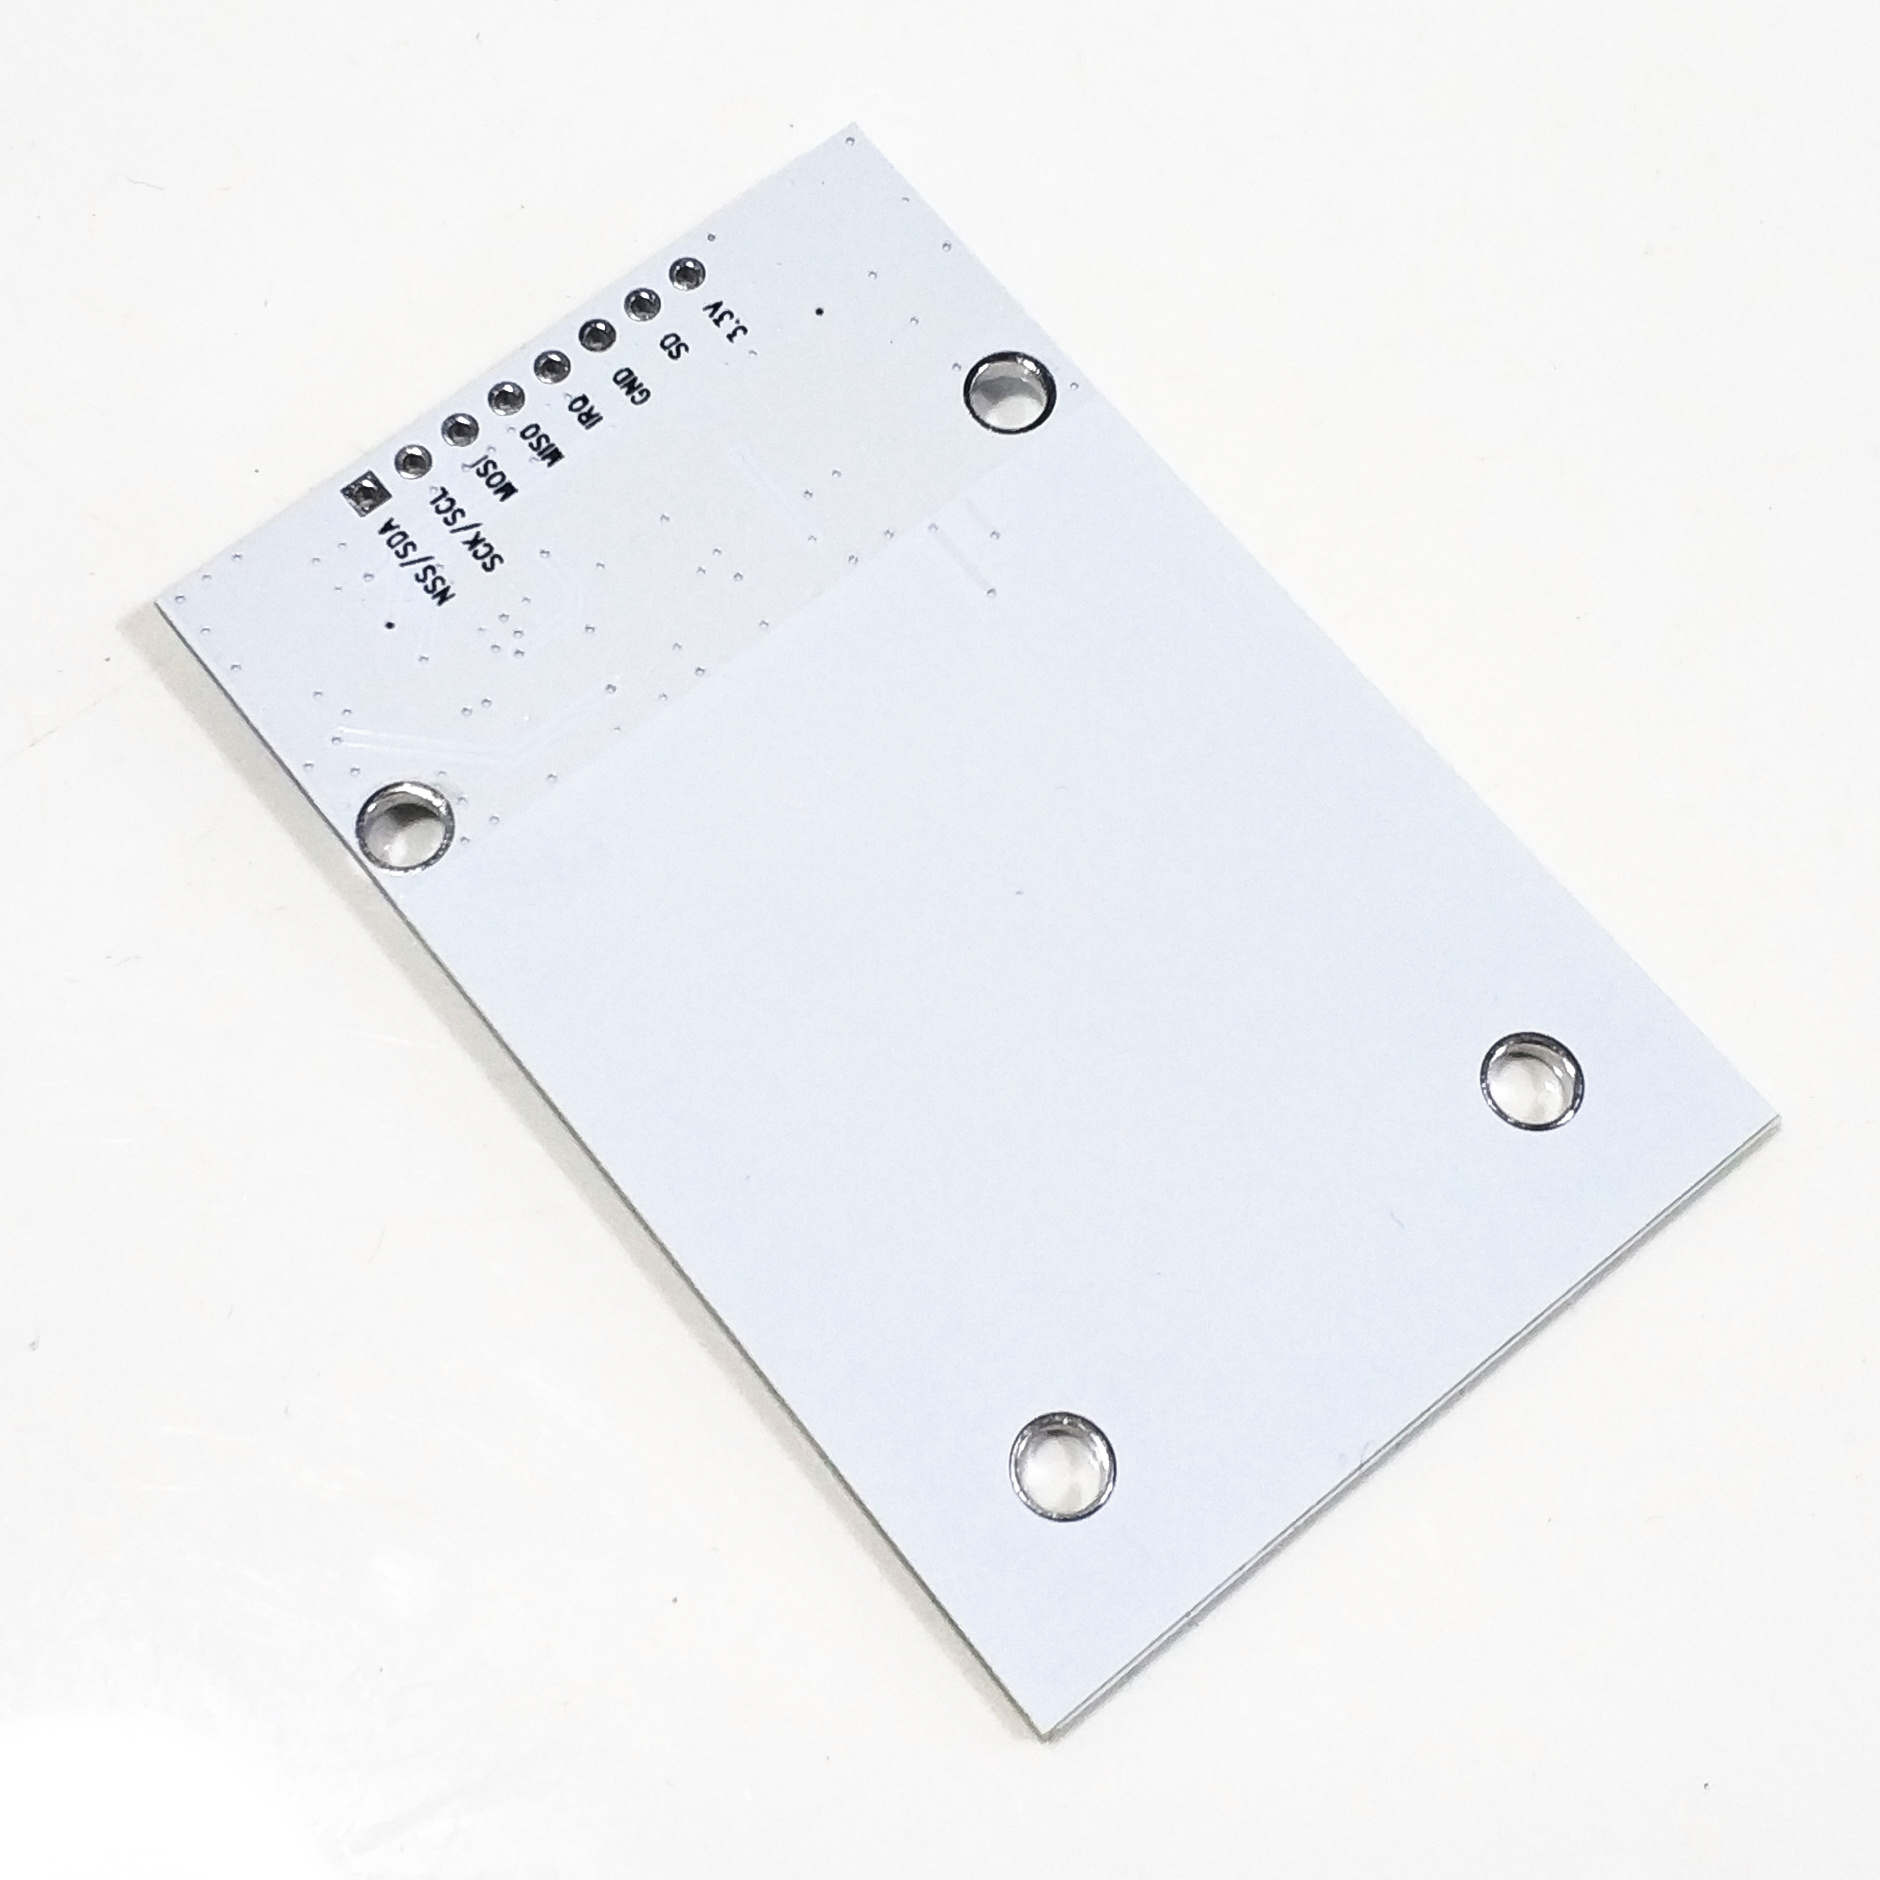 CLRC663全协议NFC读卡模块 IC卡读写 感应 RFID射频 RC663开发板